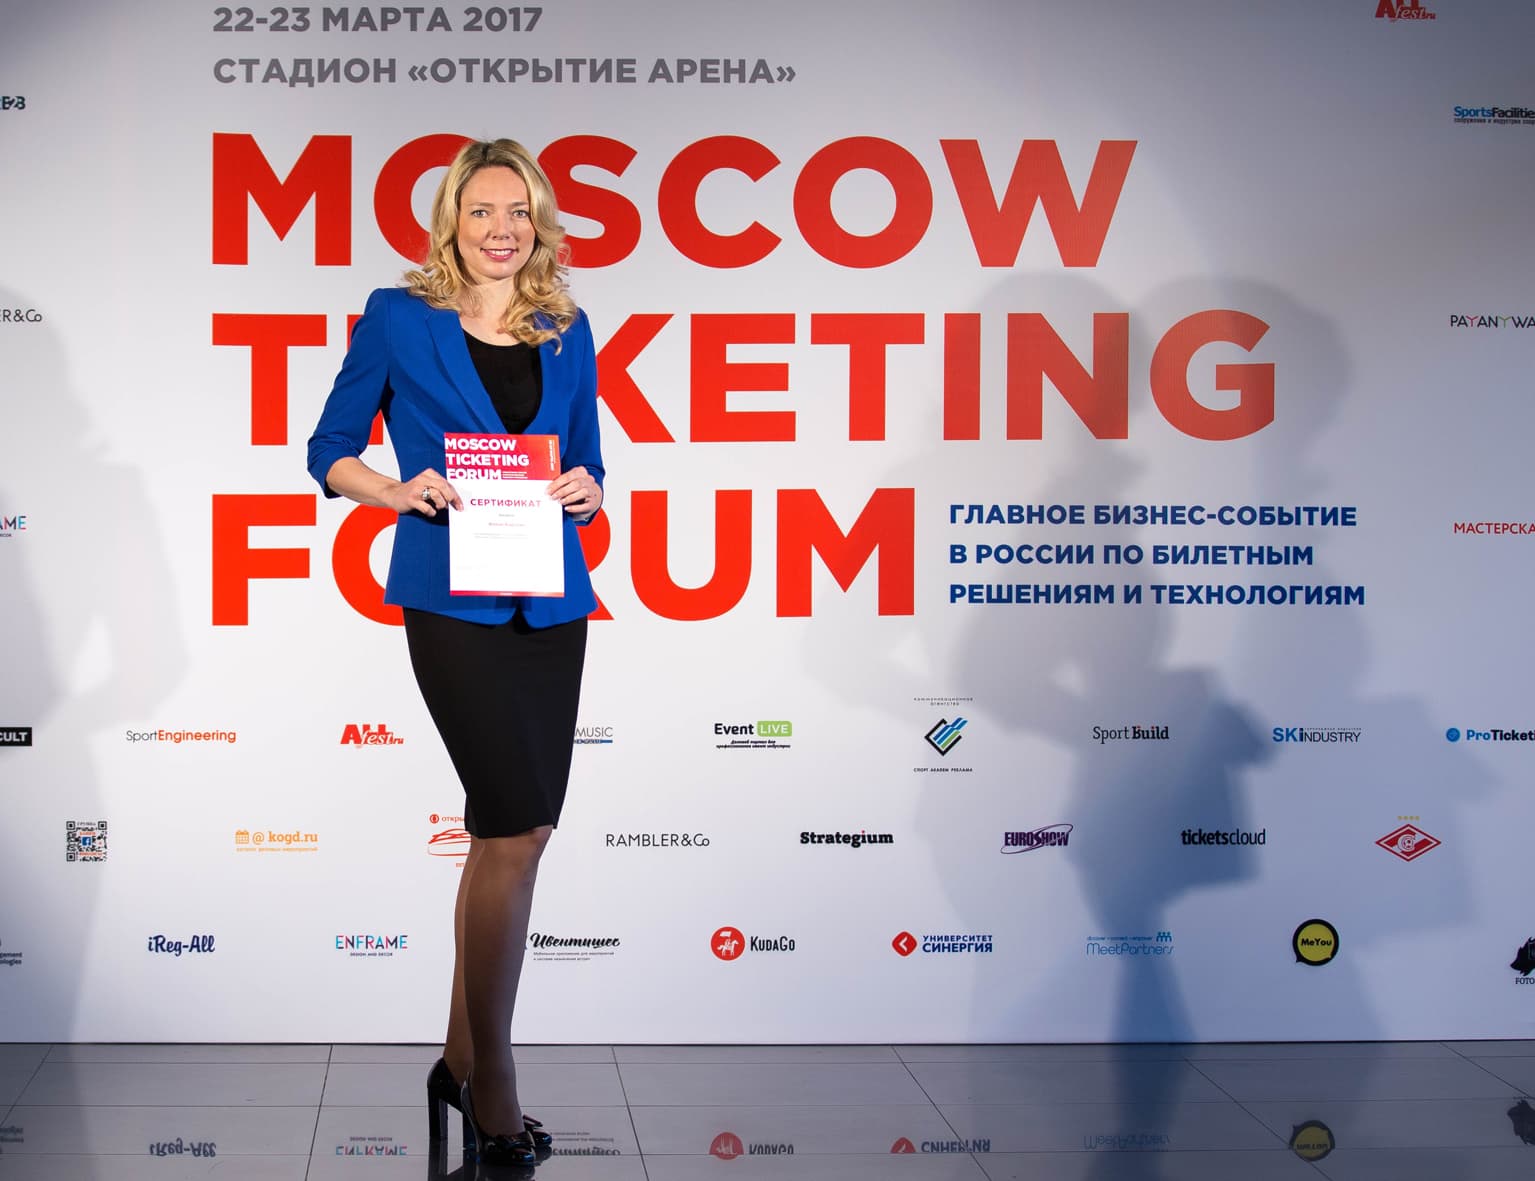 Илона Корстин приняла участие в MOSCOW TICKETING FORUM